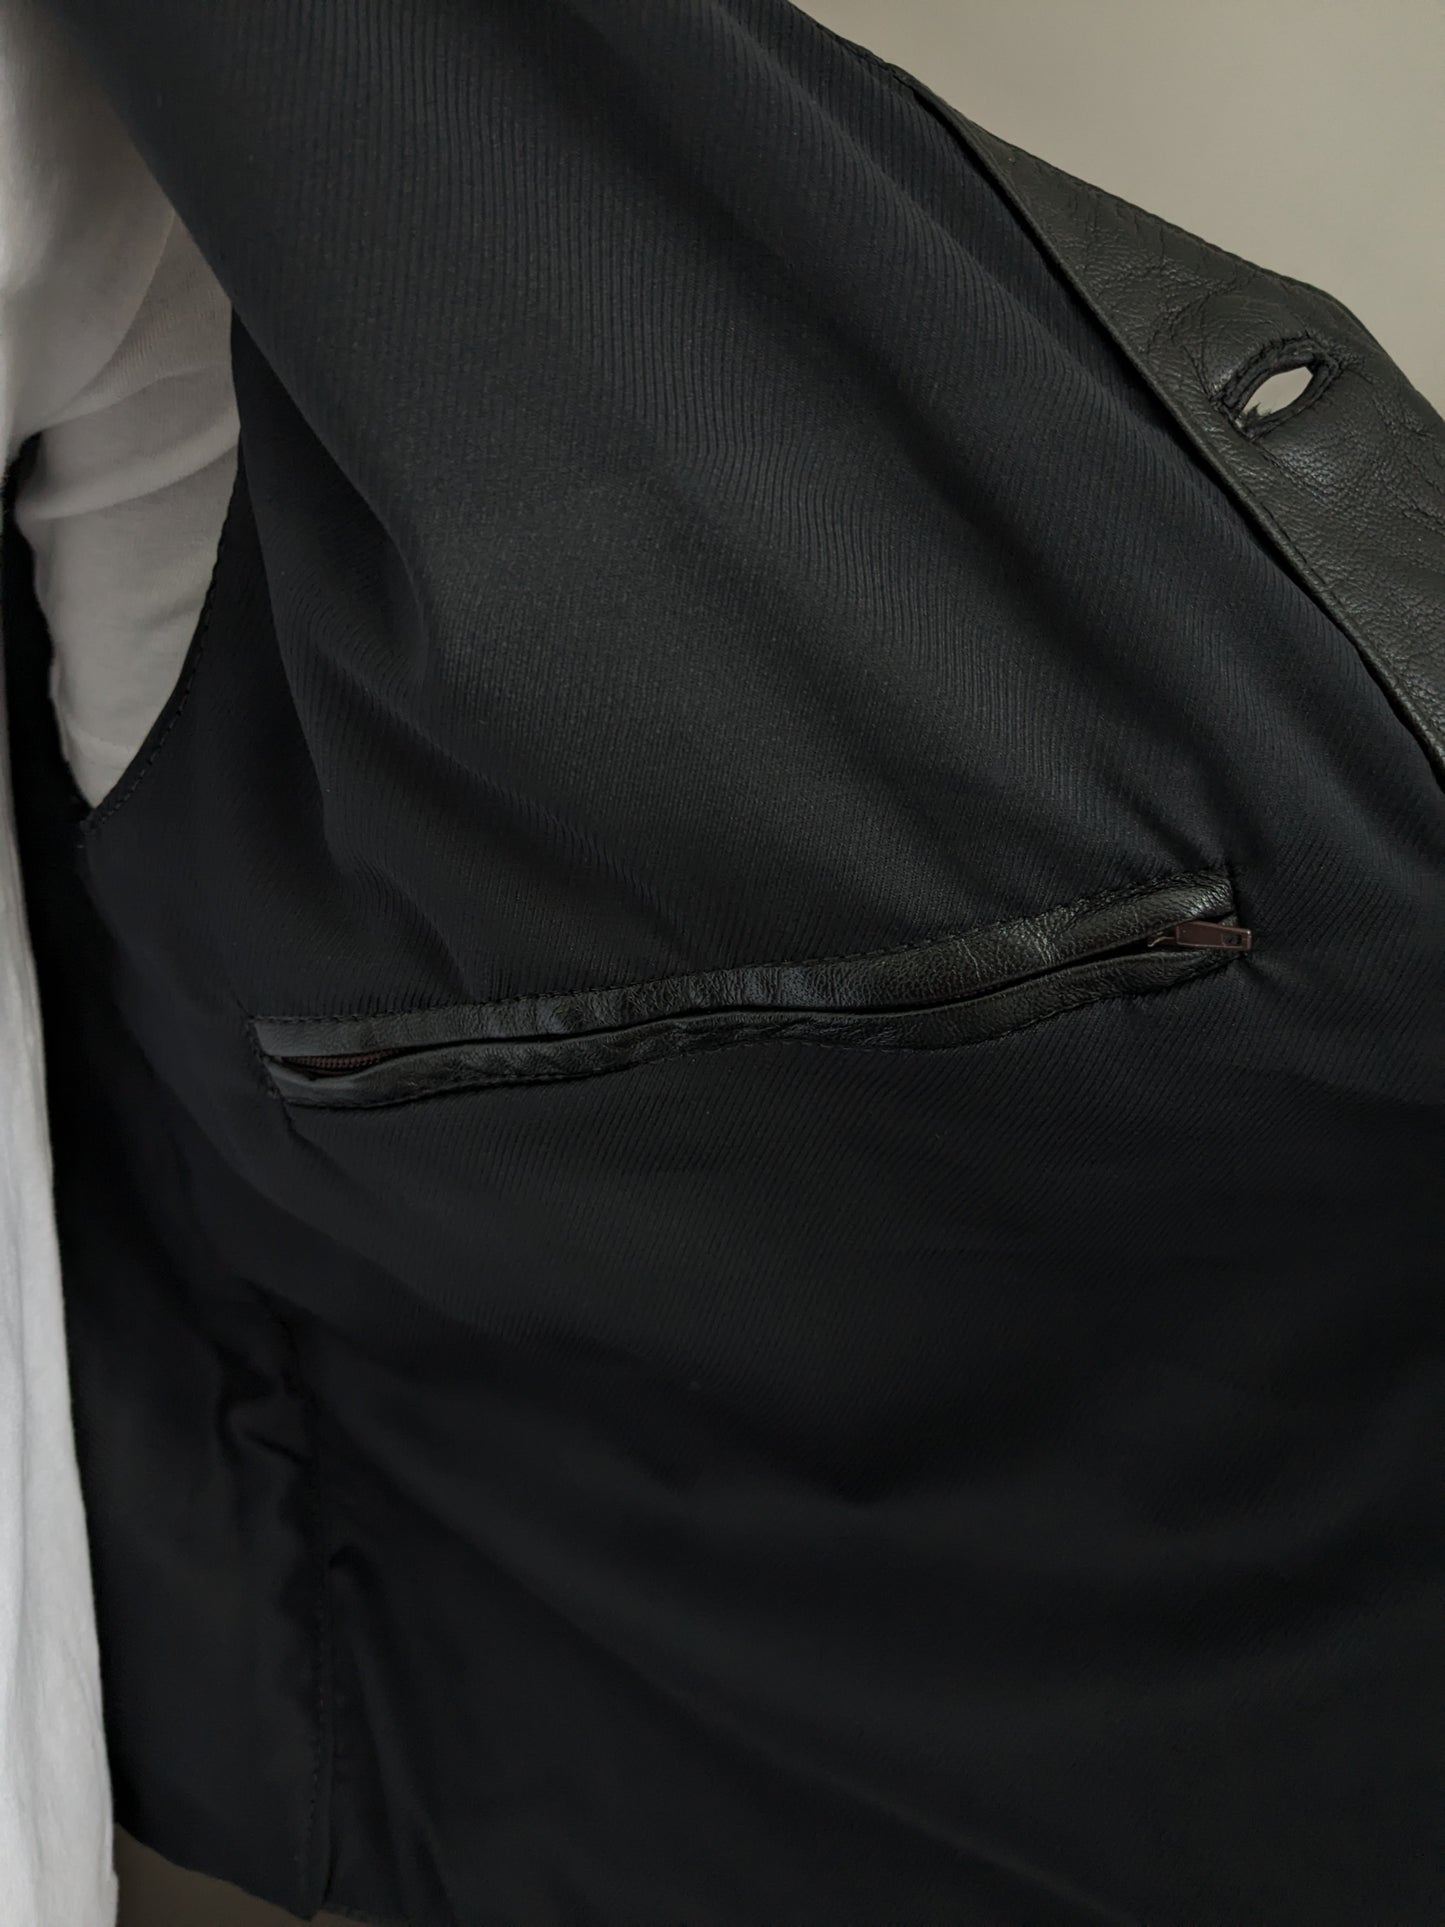 Chaleco de cuero con bolsillo interno. Negro. Tamaño xl. #318